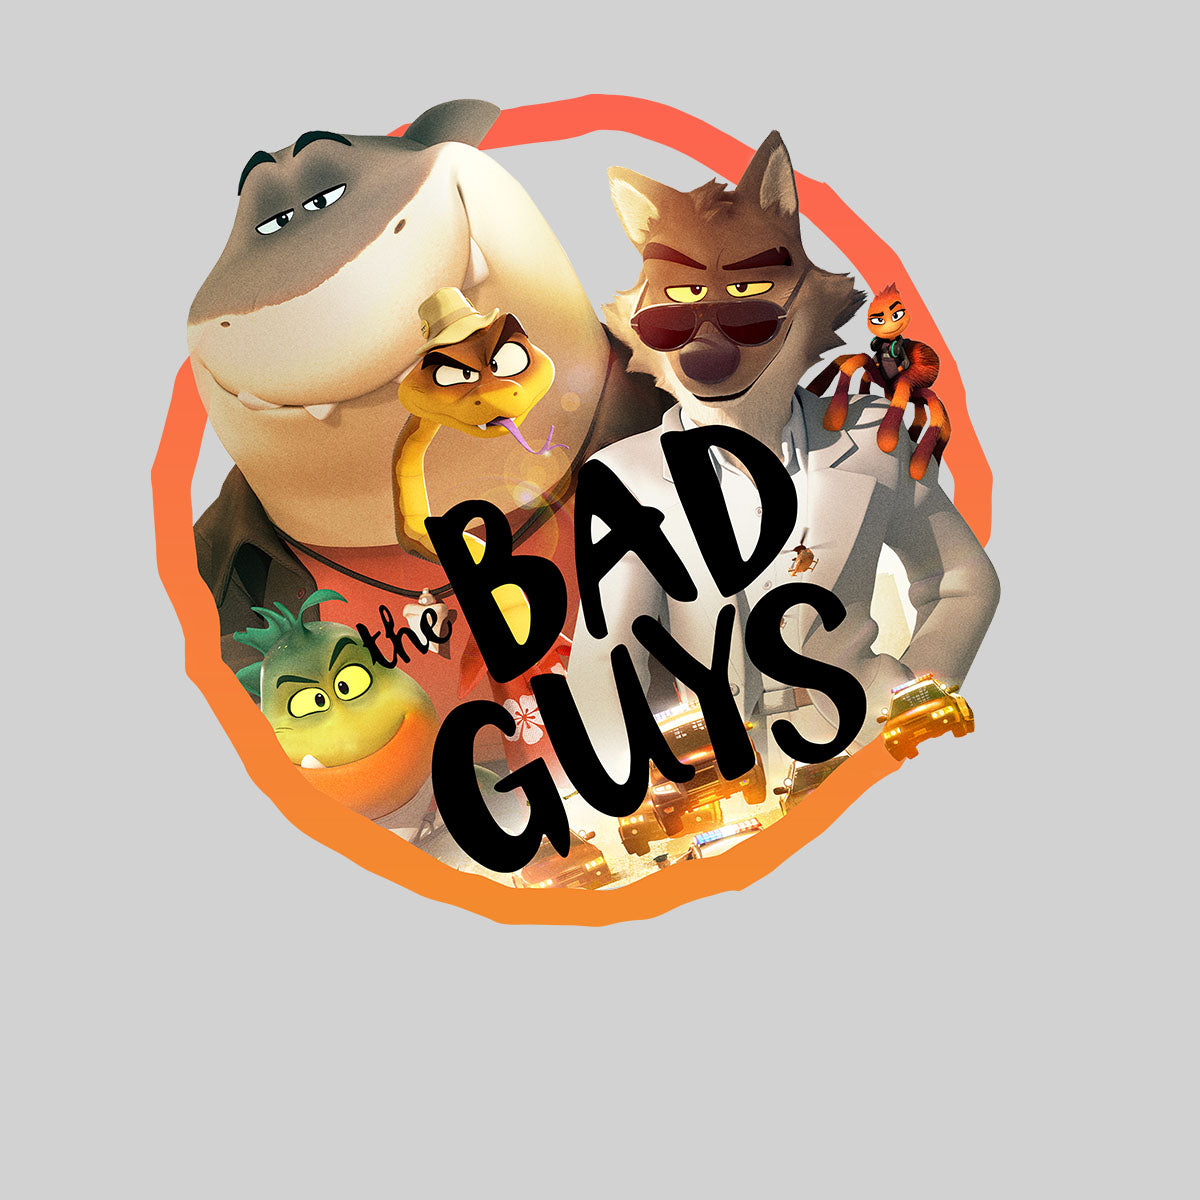 The Bad Guys Movie T-shirt for Kids - Kuzi Tees